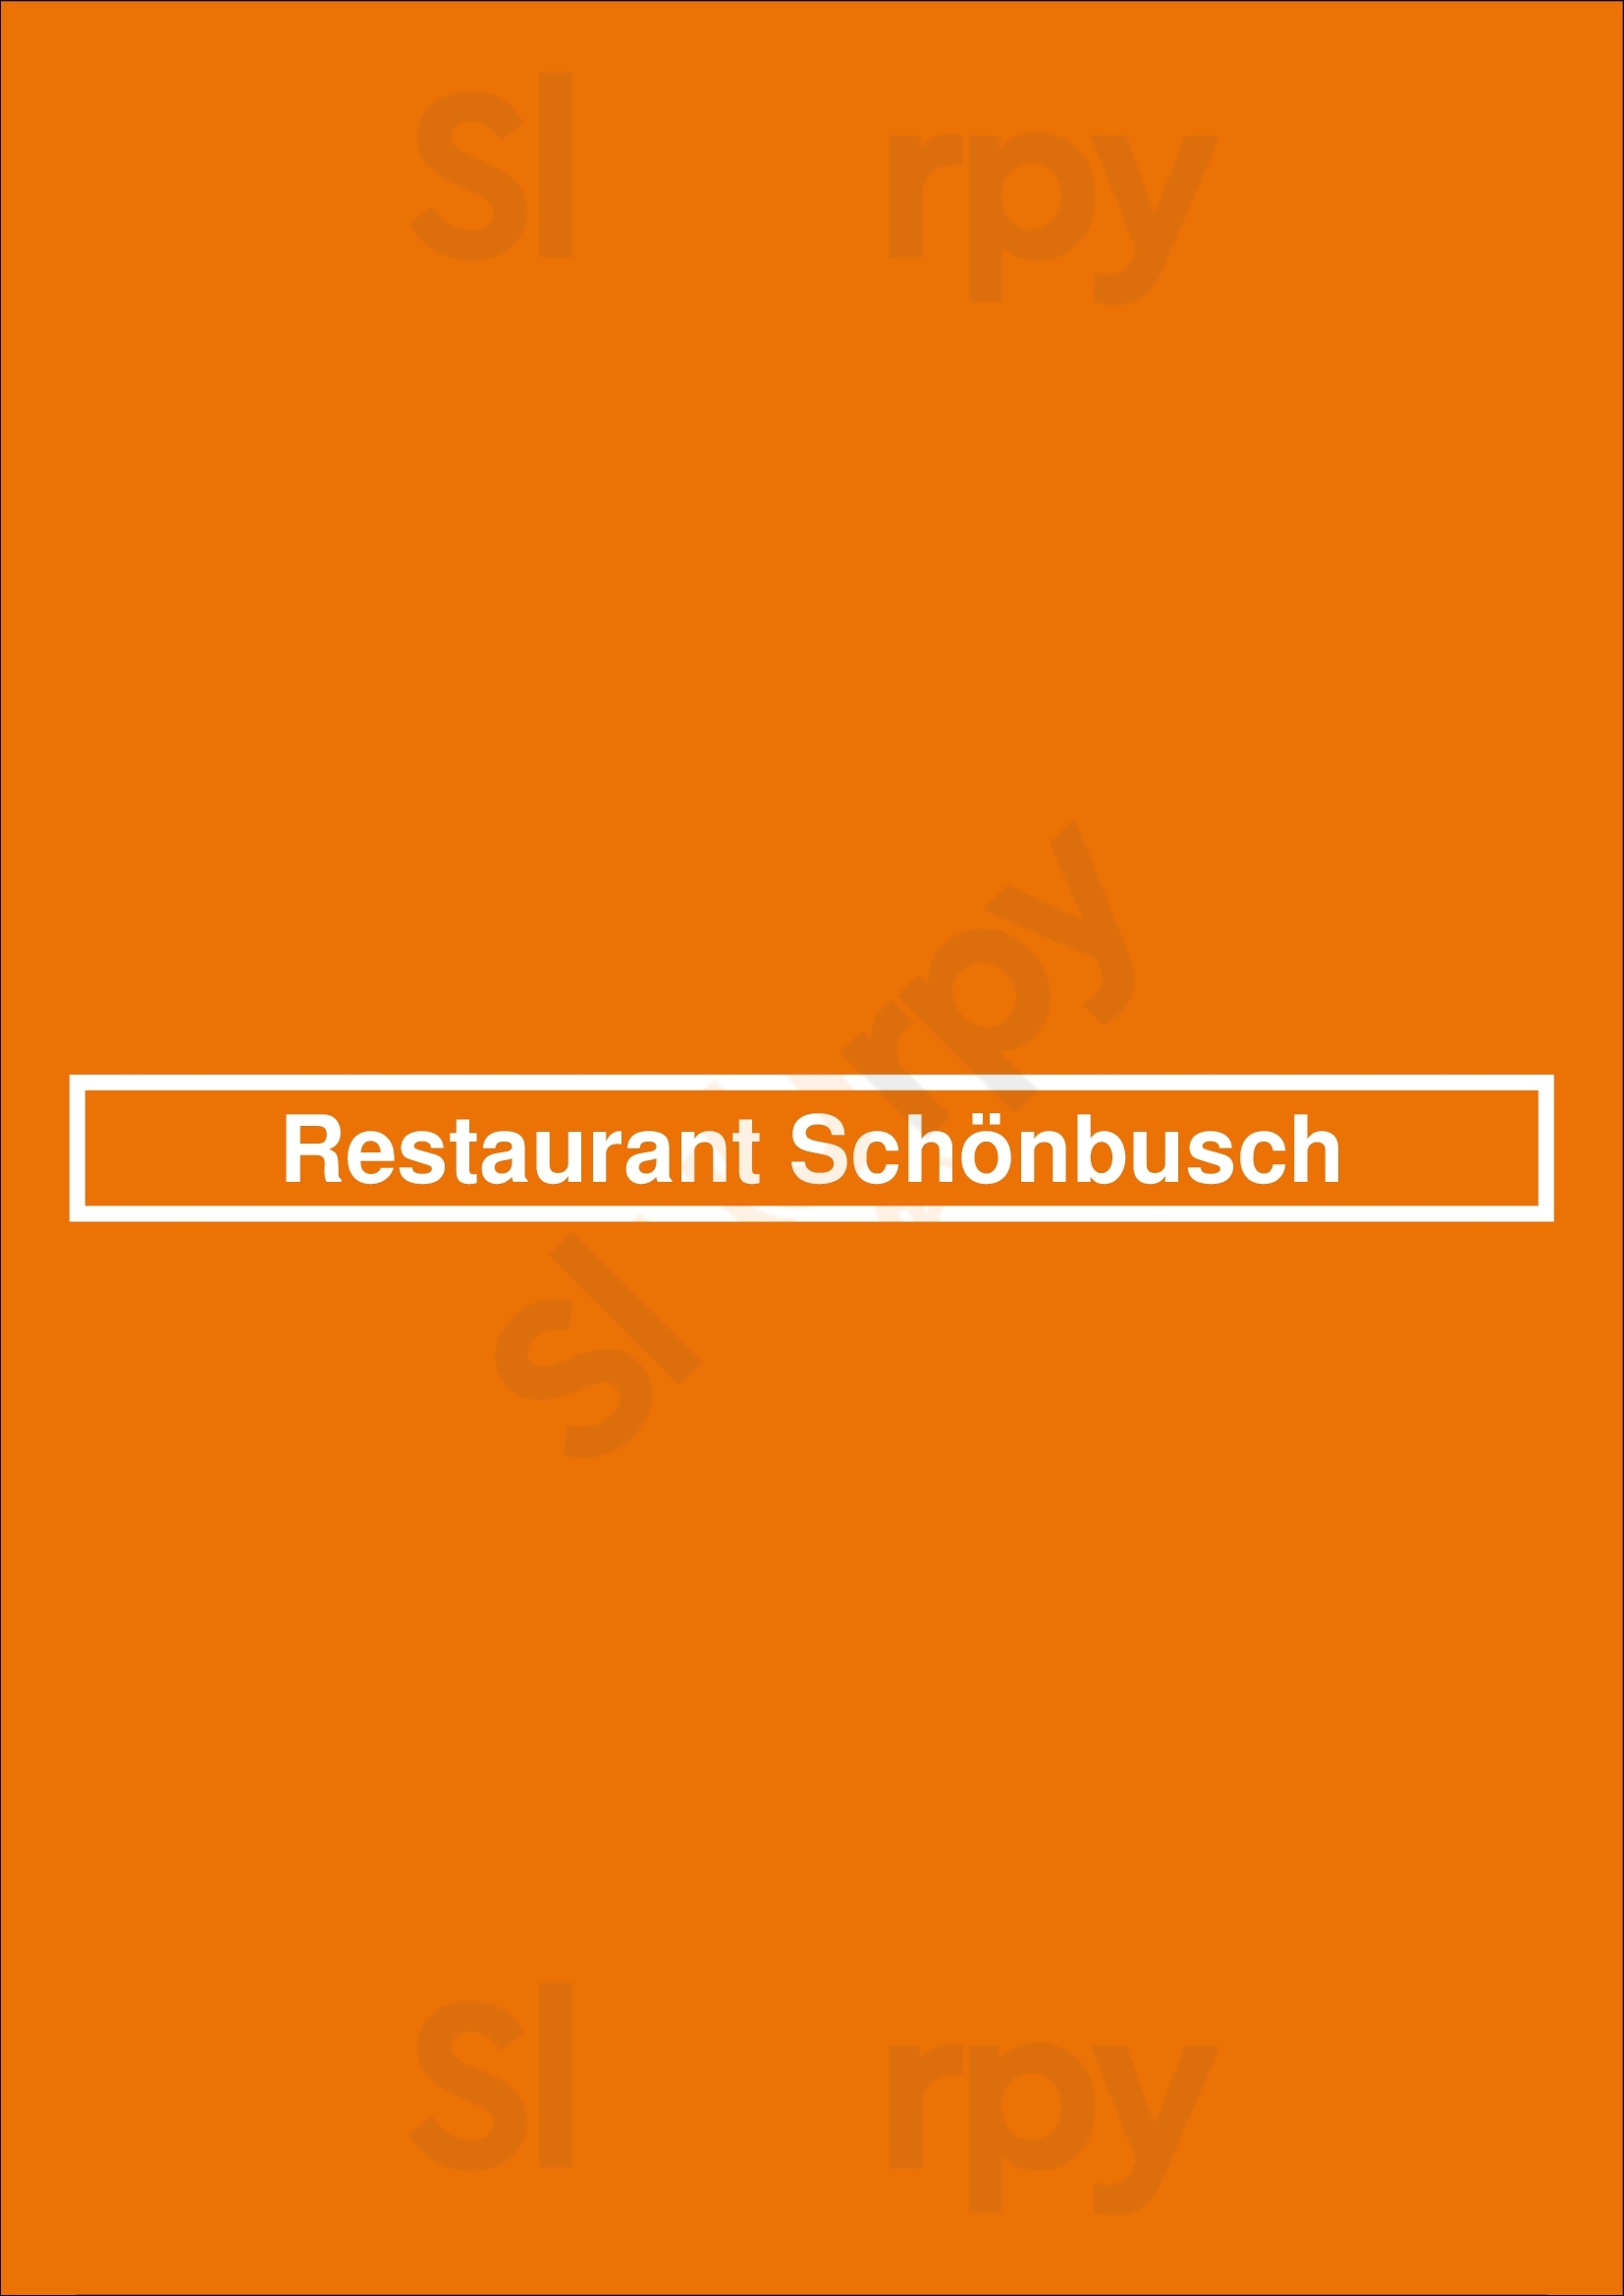 Restaurant Schönbusch Aschaffenburg Menu - 1